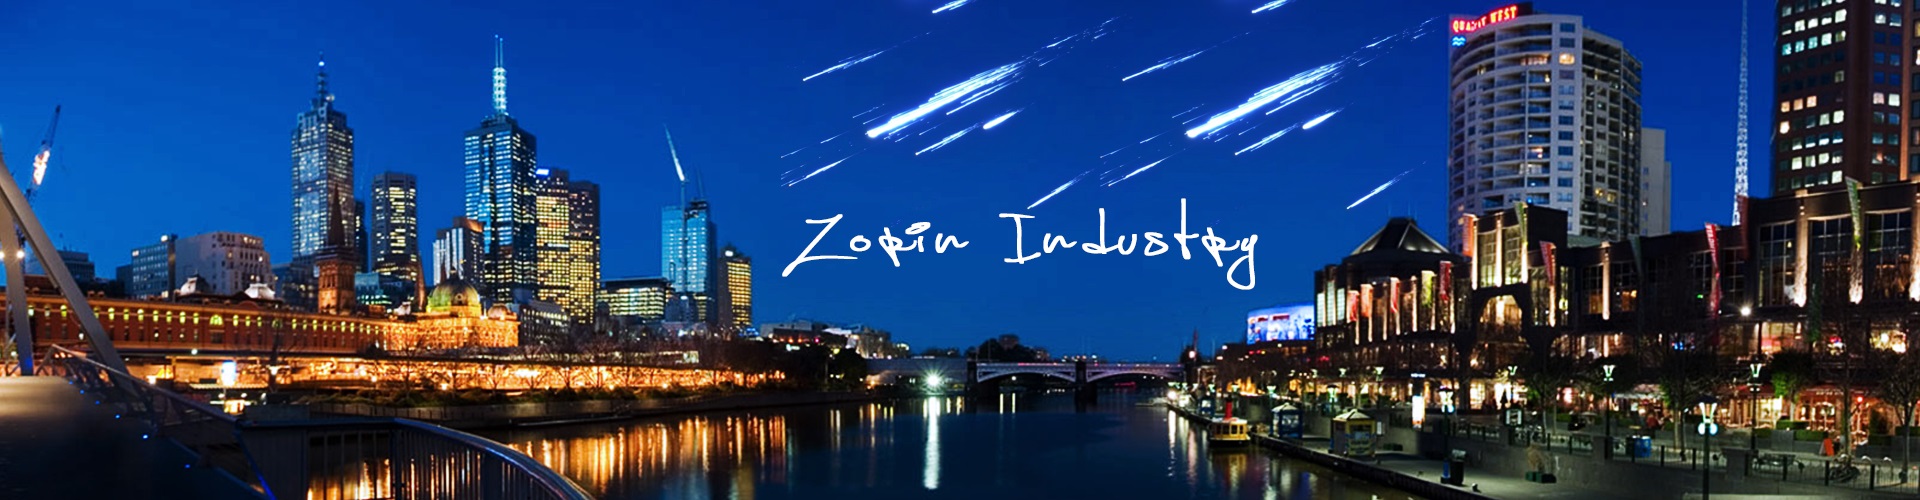 Zorin Industry  /  Design